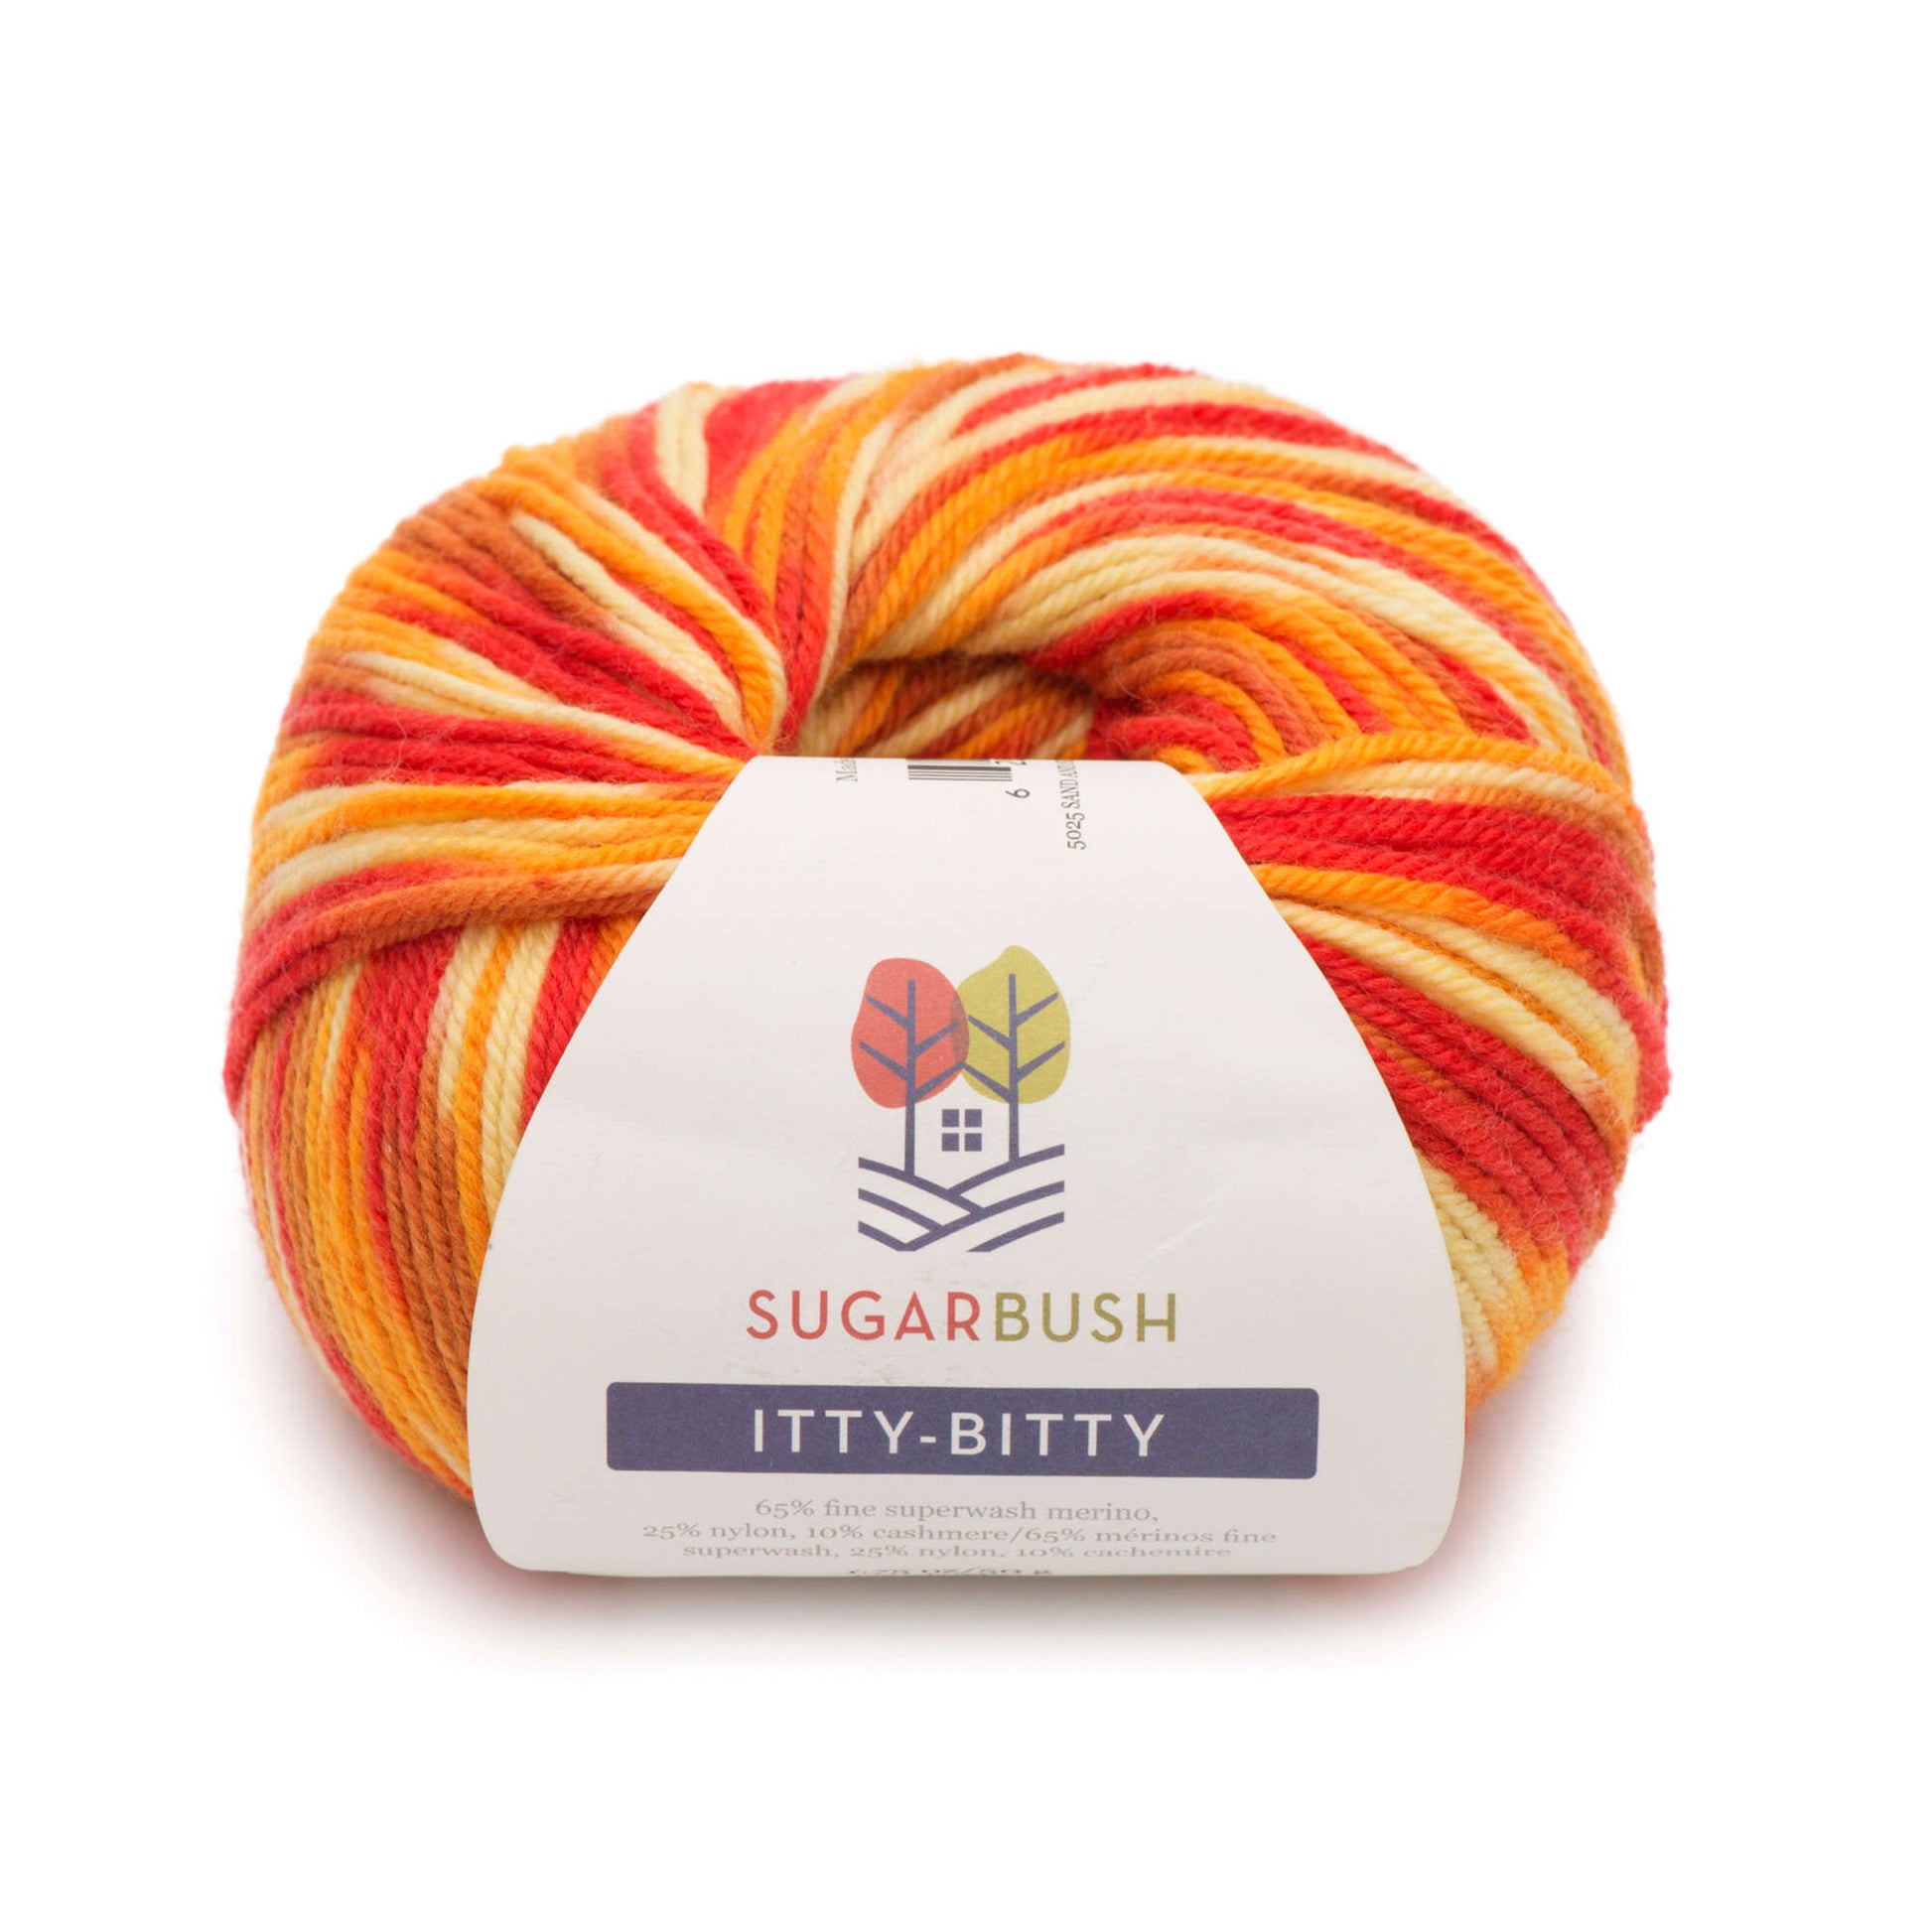 Sugar Bush Itty-Bitty Yarn - Discontinued